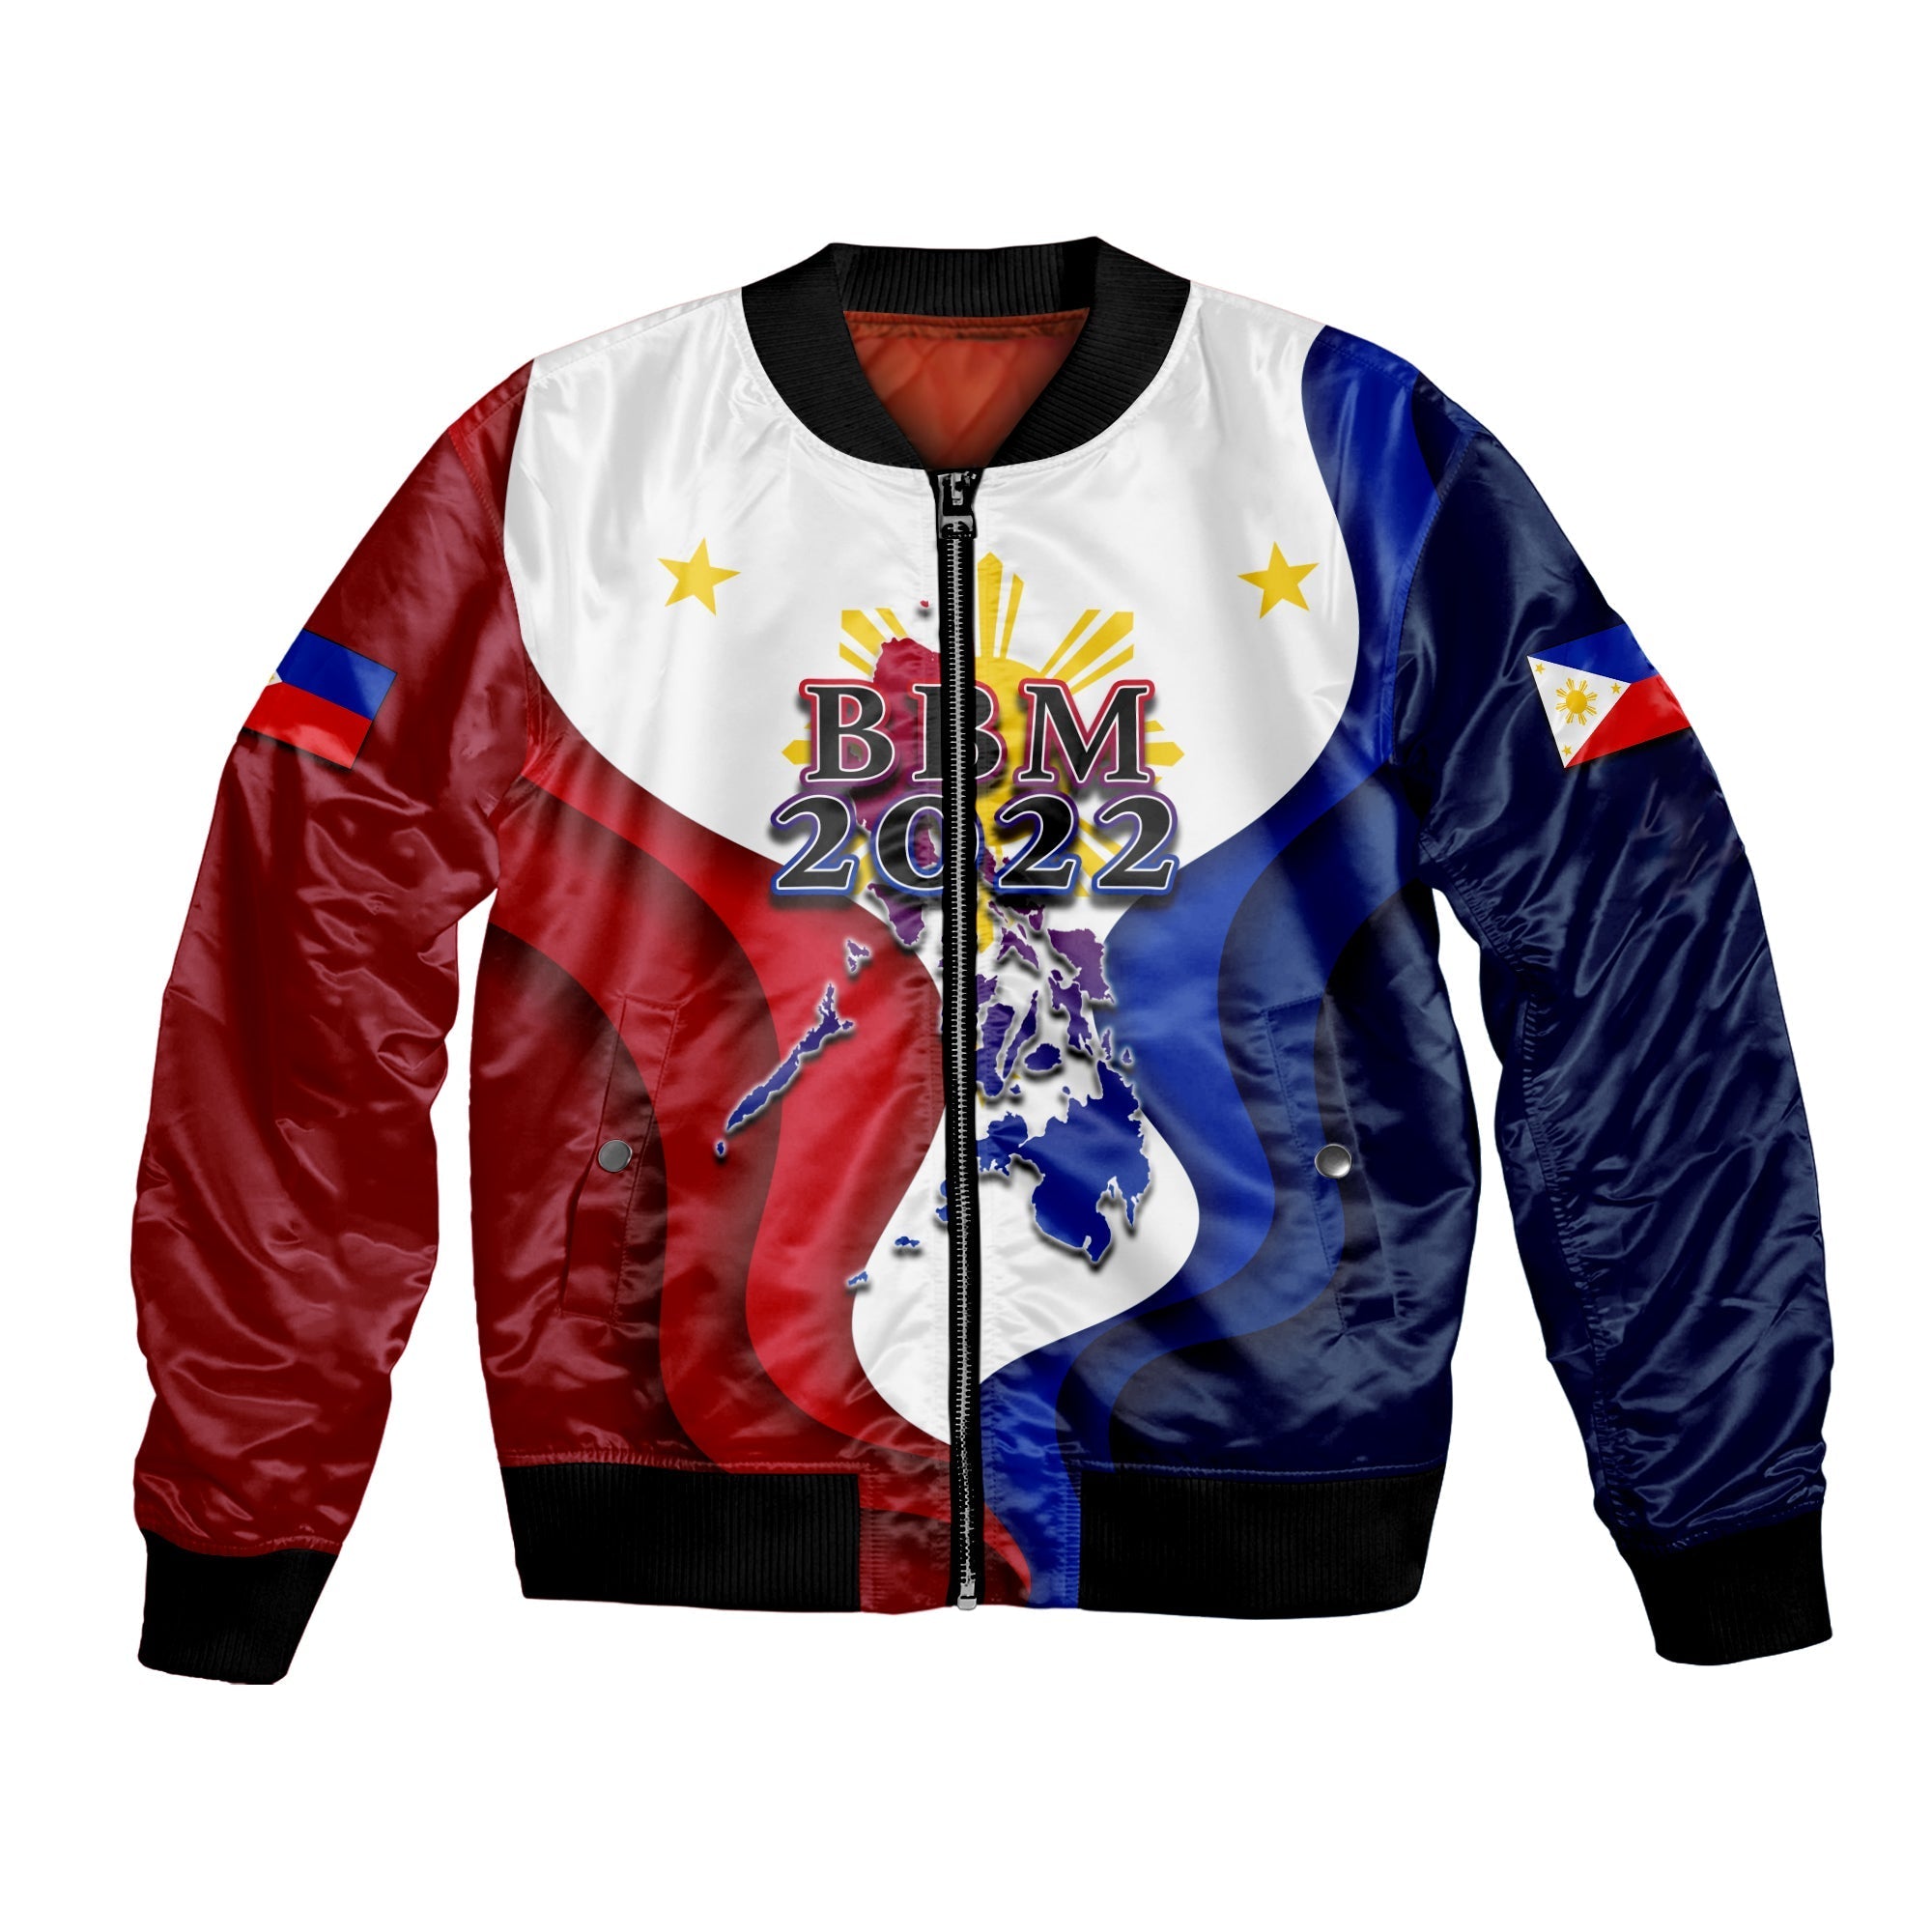 custom-personalised-philippines-bomber-jacket-bbm-2022-flag-style